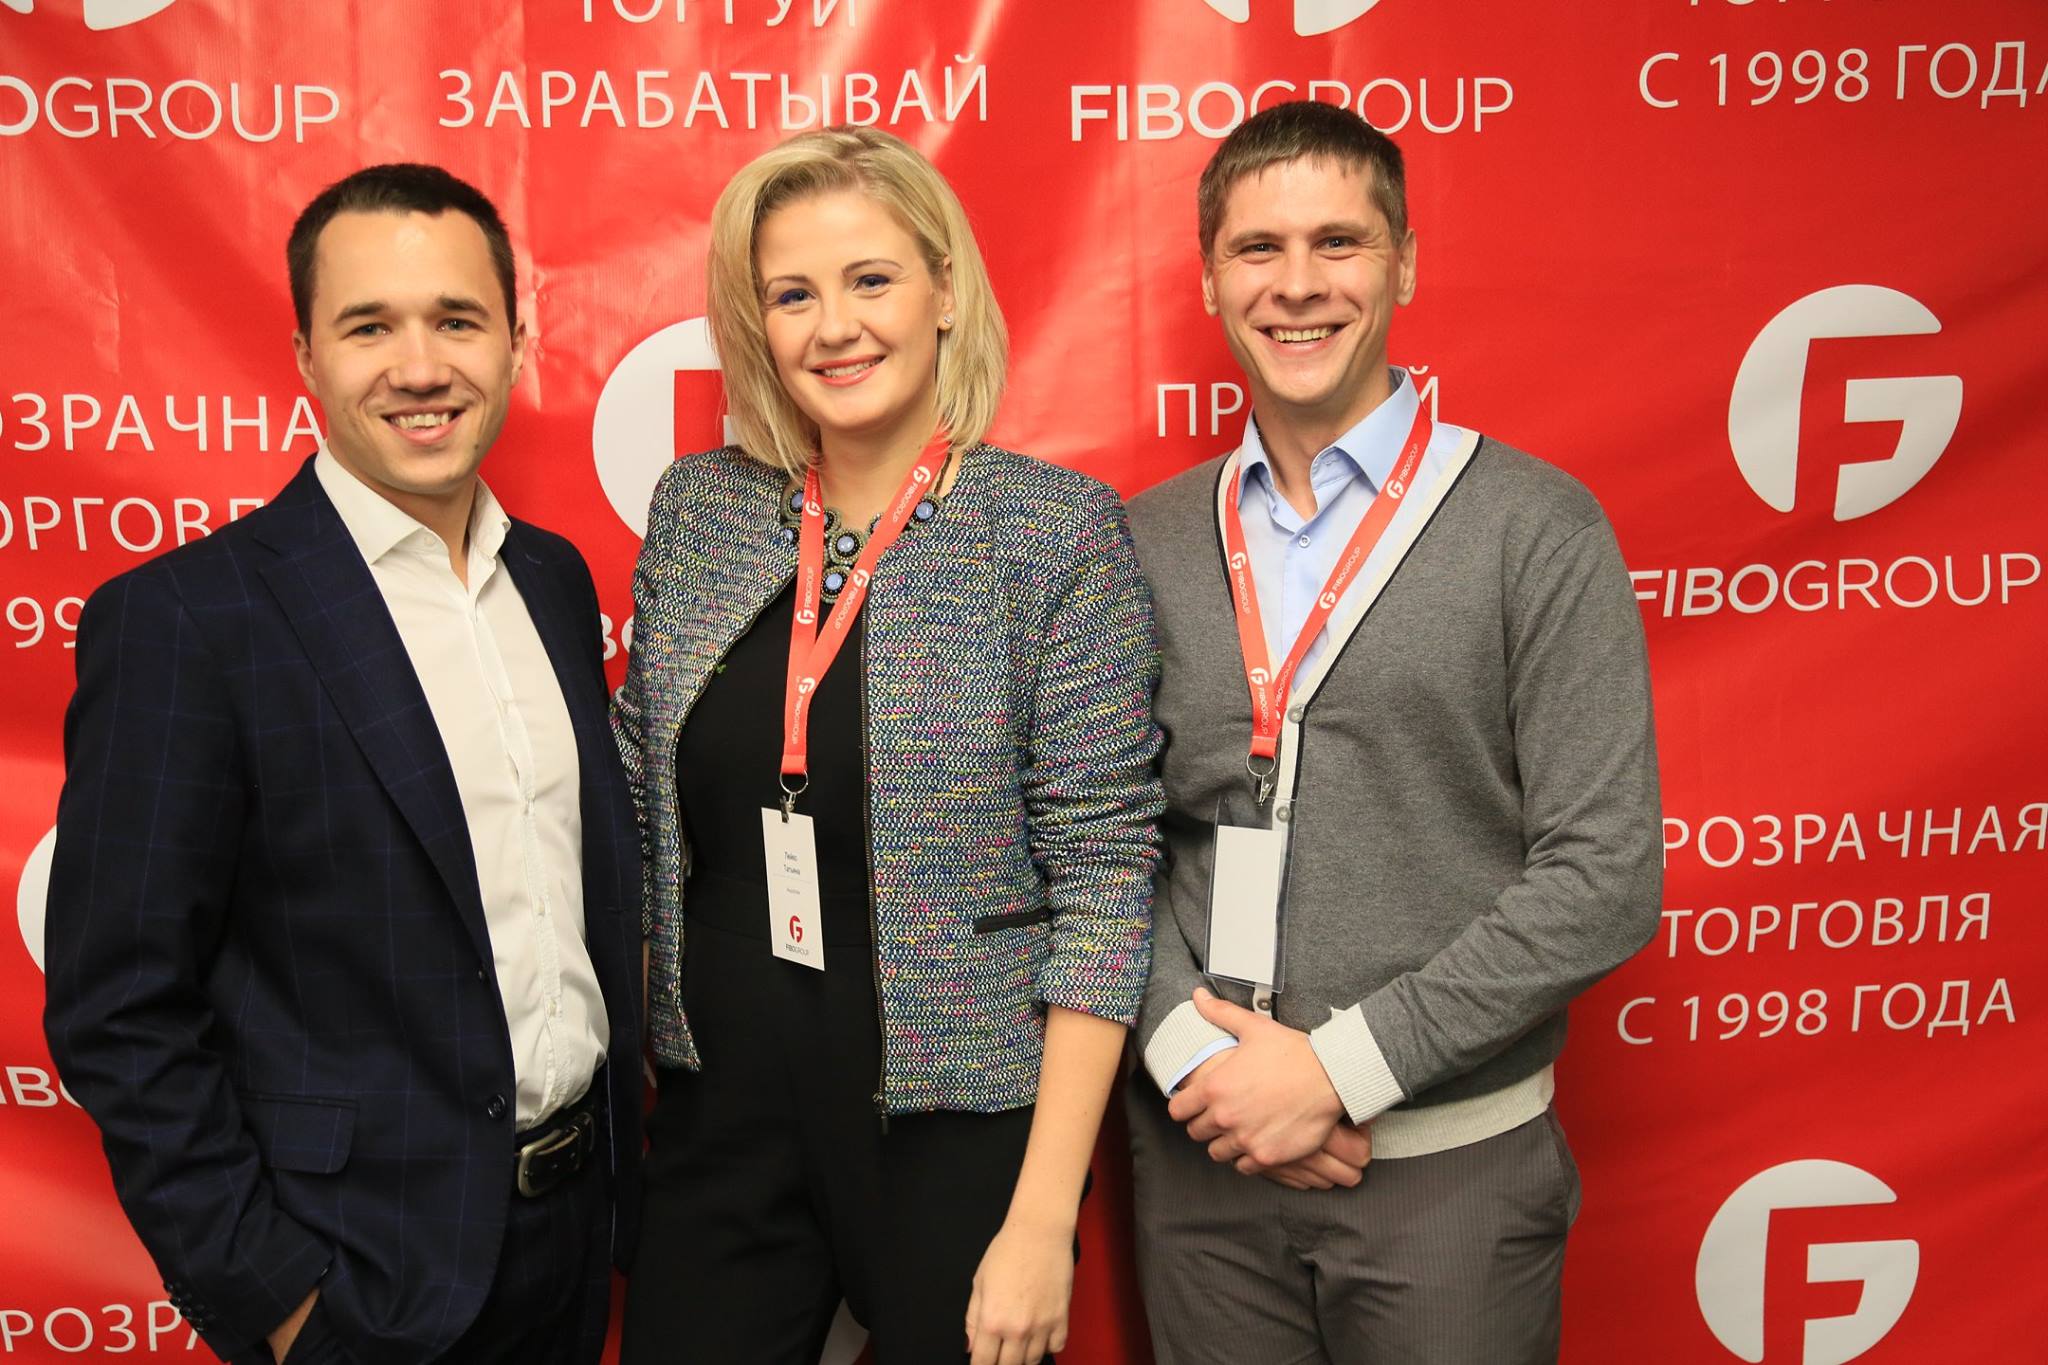 28 ноября 2015 FIBO Forex Congress в Киеве